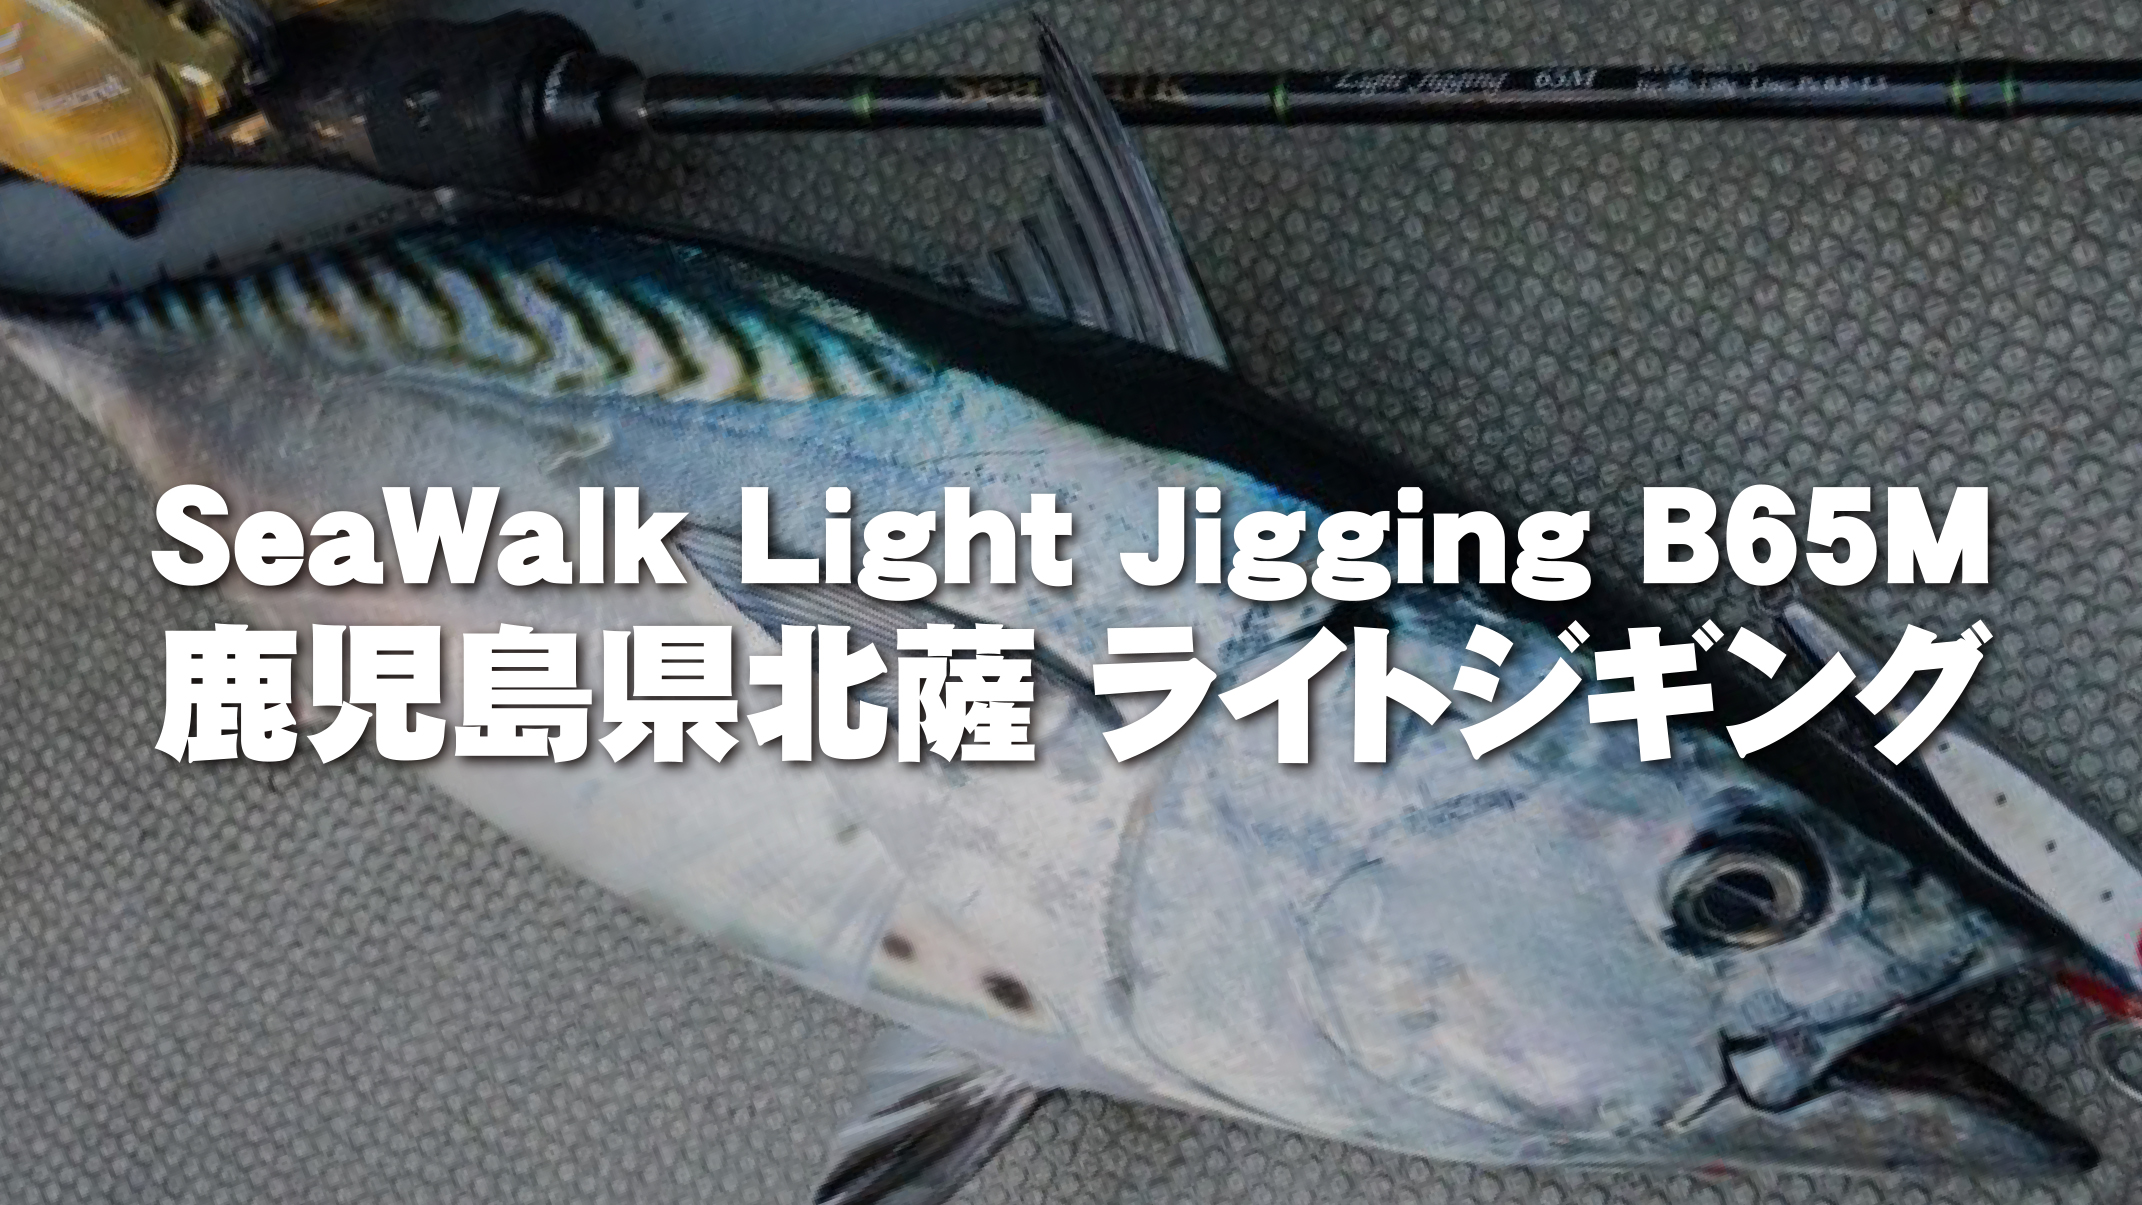 【フィールドスタッフレポート】『鹿児島県北薩 ライトジギング』SeaWalk Light Jigging B65M